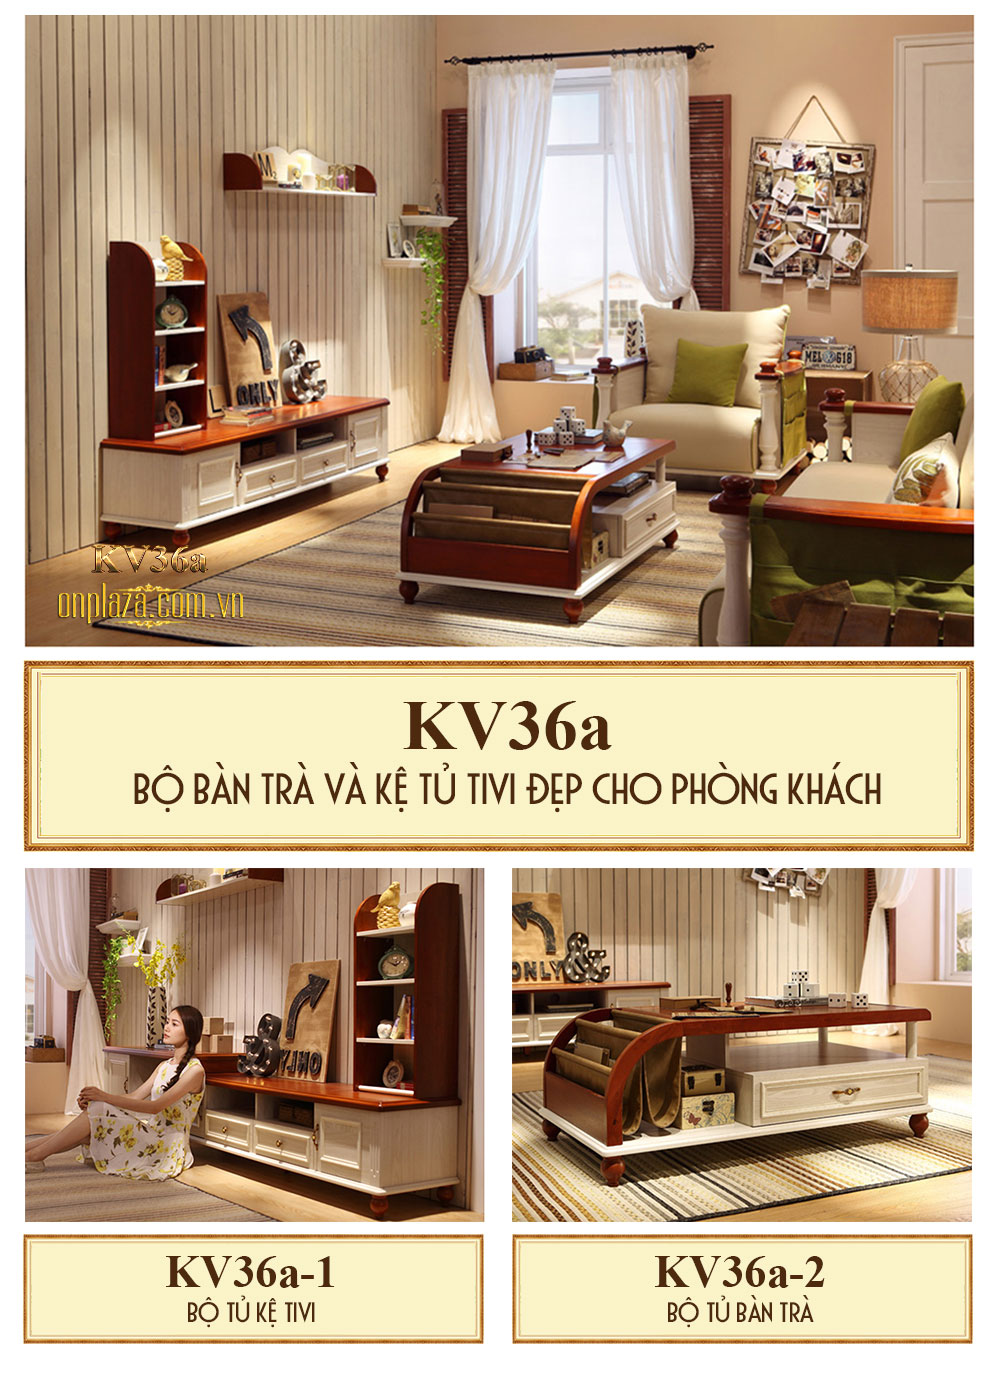 Bộ bàn trà và kệ tủ tivi đẹp cho phòng khách sang trọng KV36